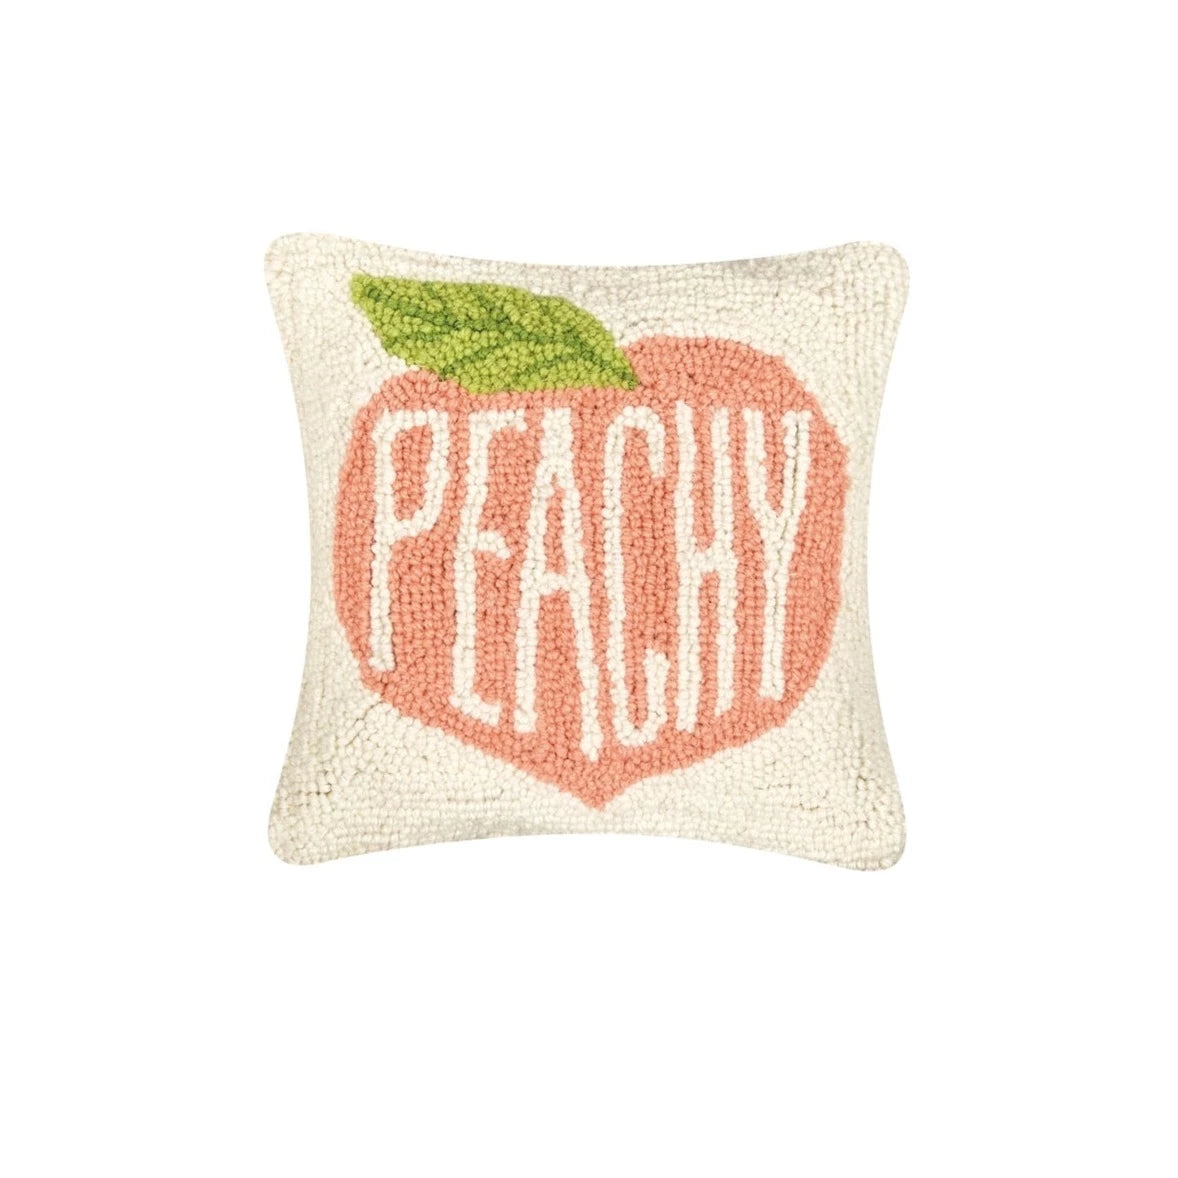 Peachy Keen Small Cushion